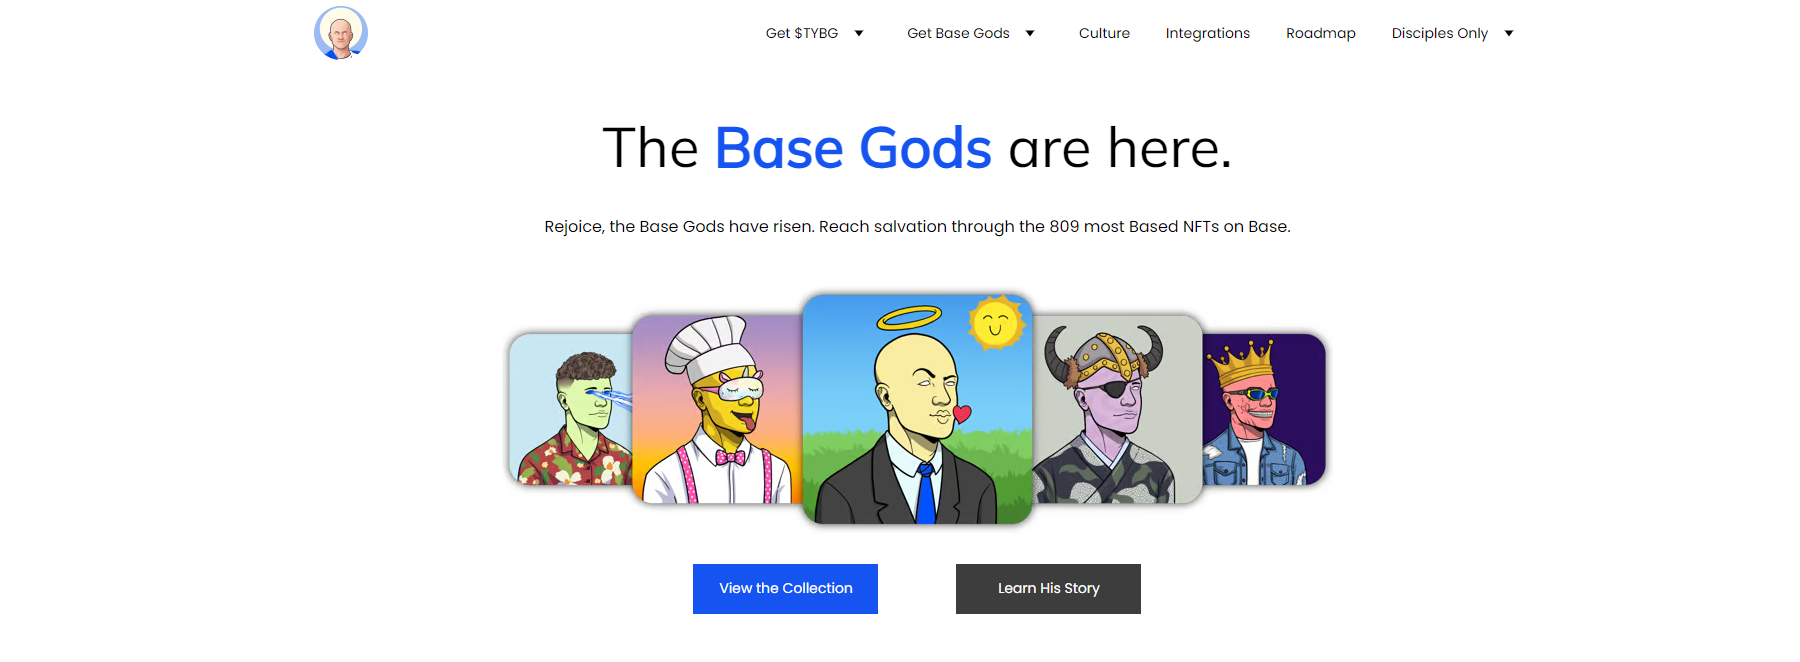 Base Gods là gì